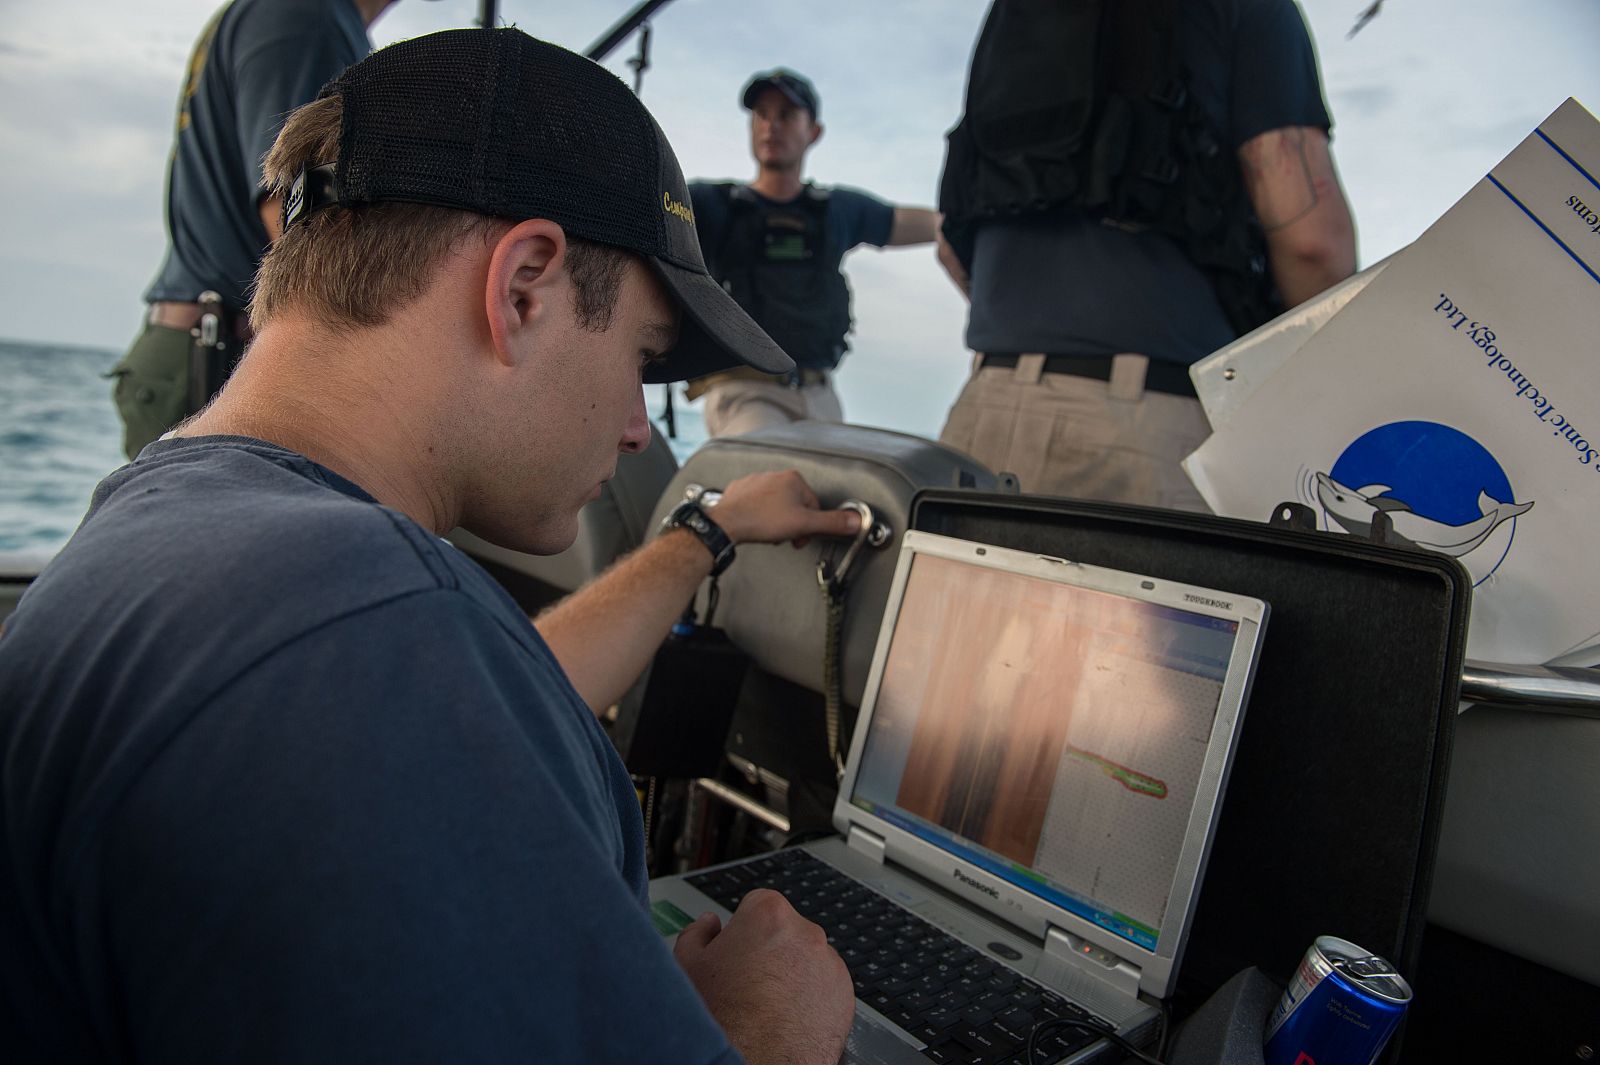 Uno de los miembros del equipo de rescate muestra en el ordenador la señal del sonar que localiza los supuestos restos del avión.